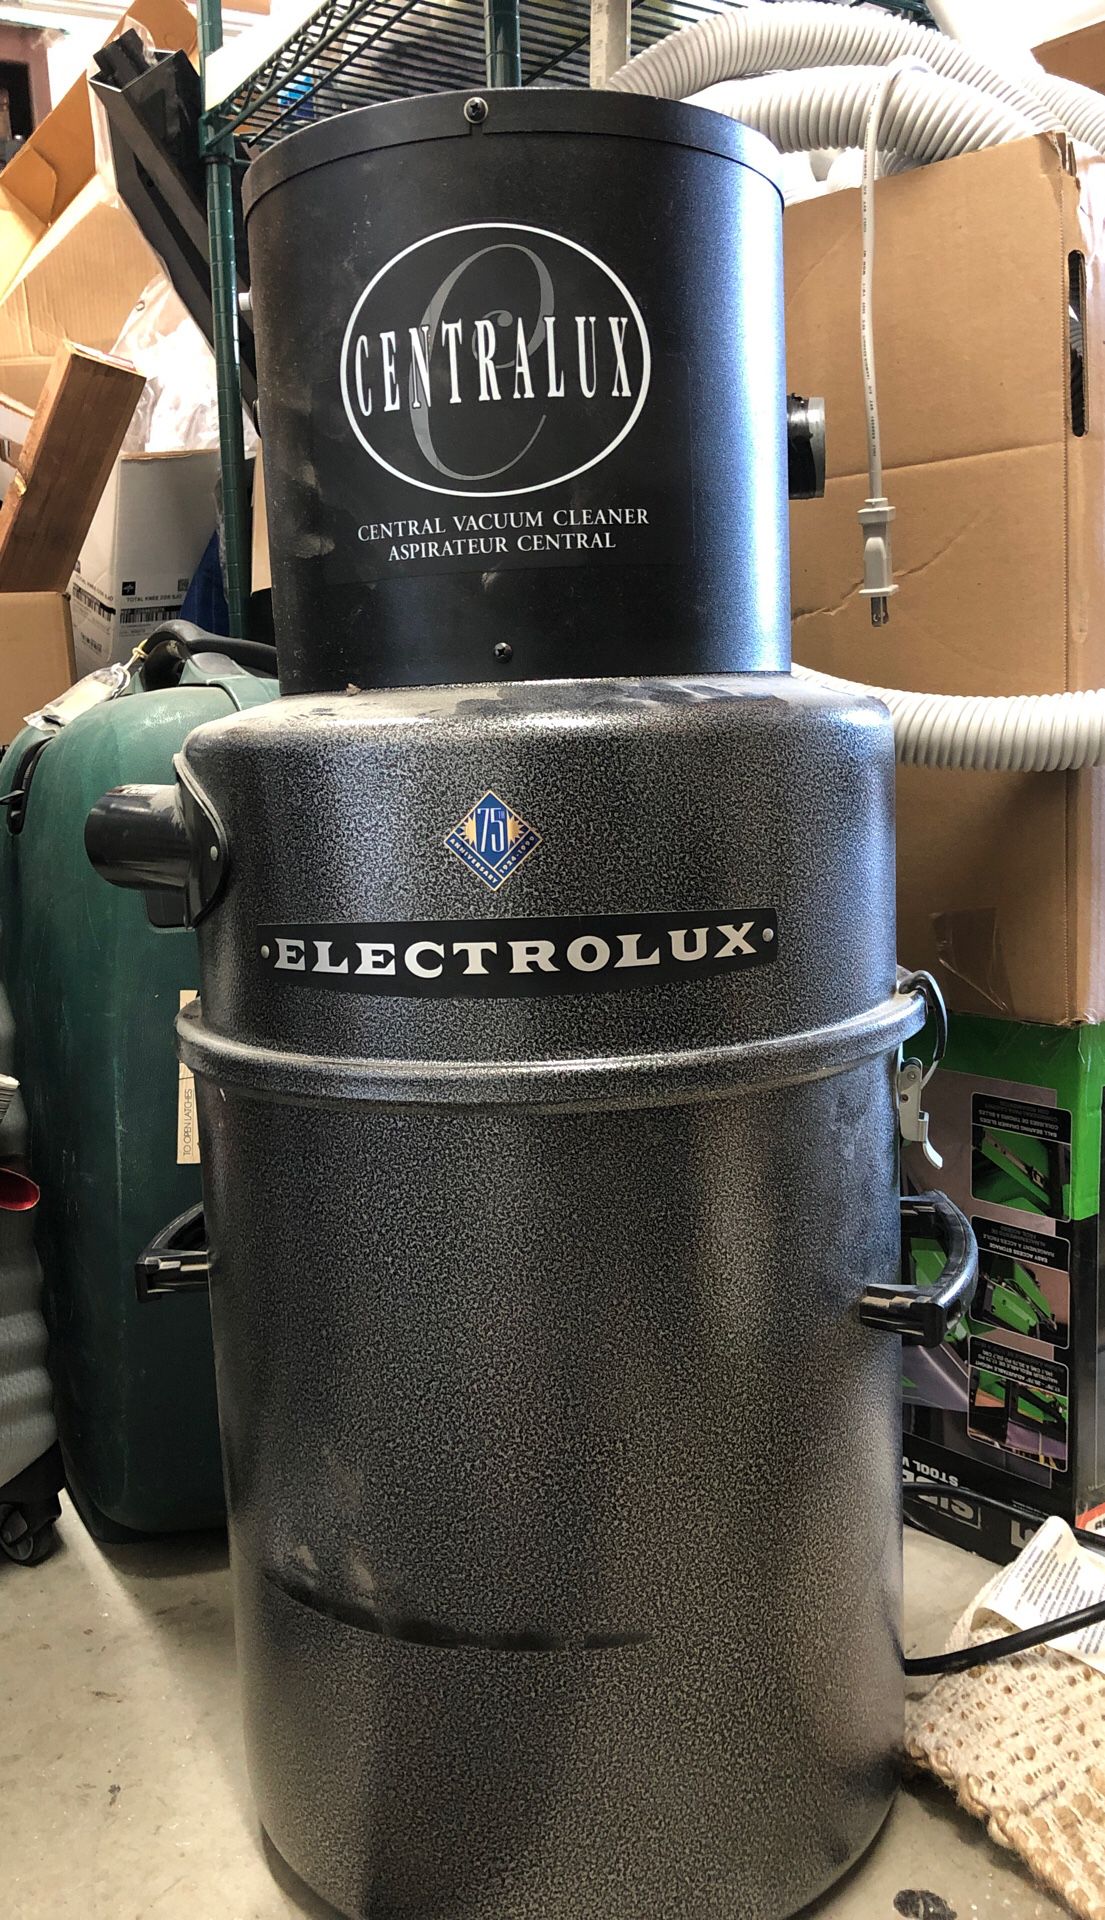 Electrolux whole house vacuum